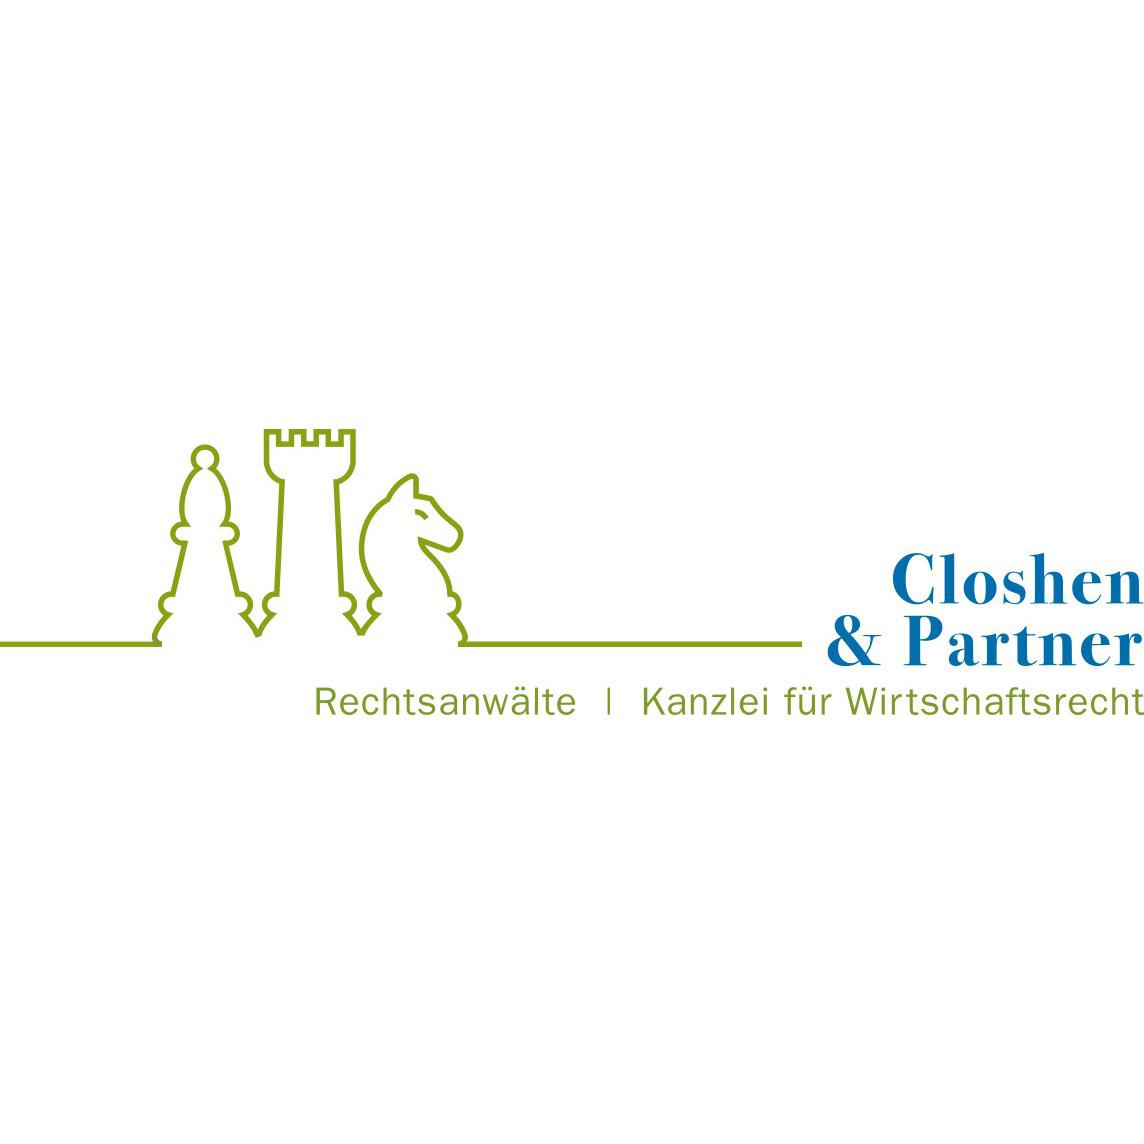 Rechtsanwälte Bad Kreuznach Closhen & Partner in Bad Kreuznach - Logo